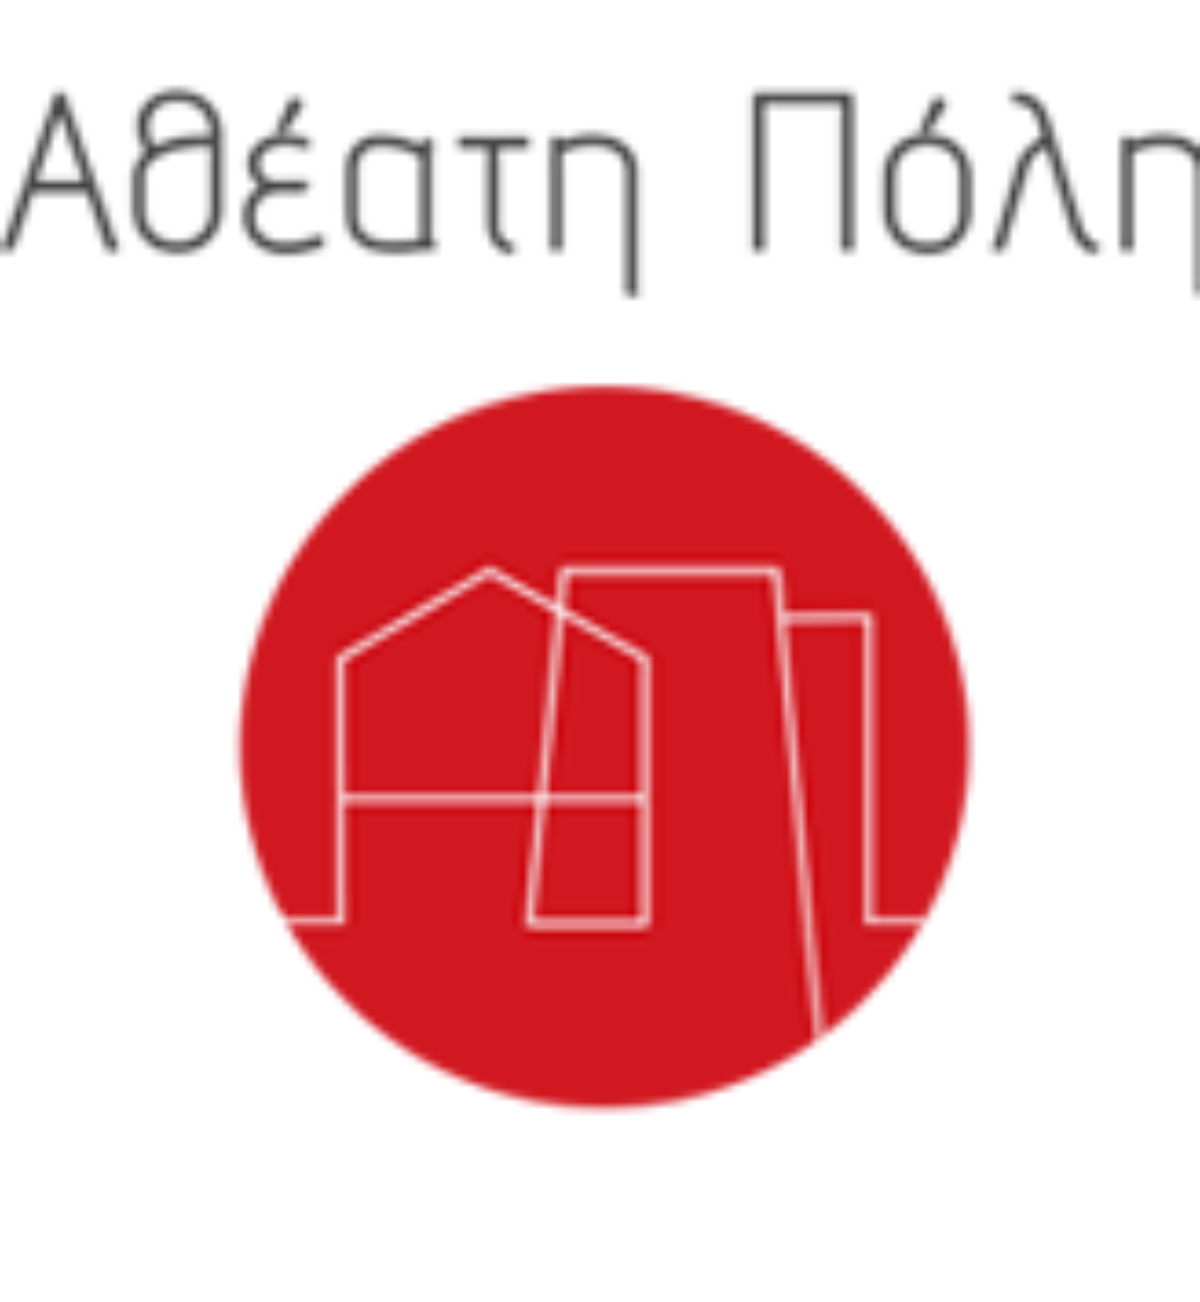 Φεστιβάλ για το δημόσιο χώρο «Αθέατη Πόλη», 13, 14 και 15 Σεπτεμβρίου 2019, Ηράκλειο Κρήτης